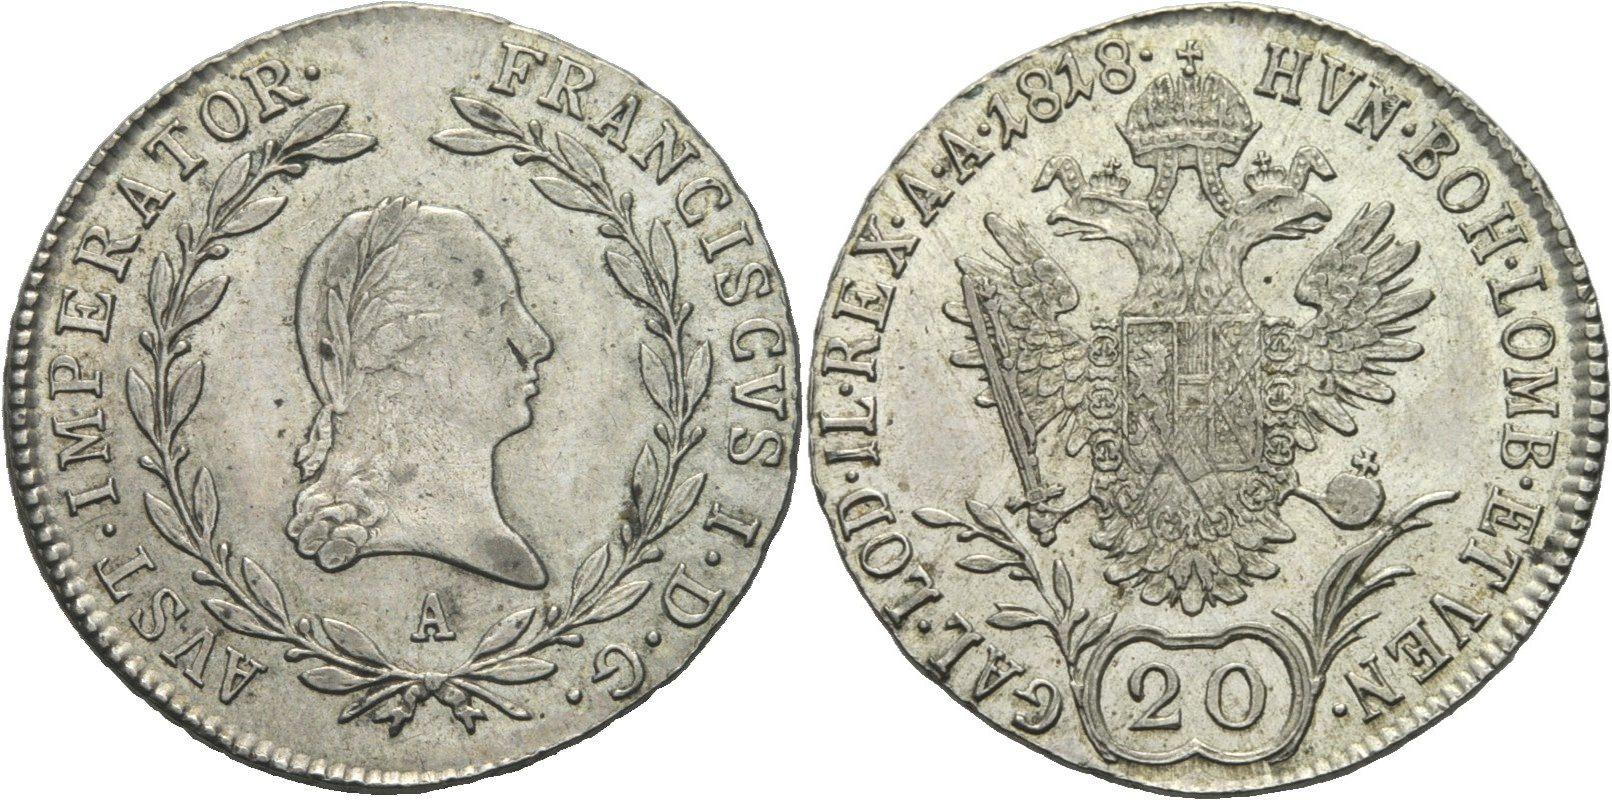 Foto Österreich 20 Kreuzer 1818